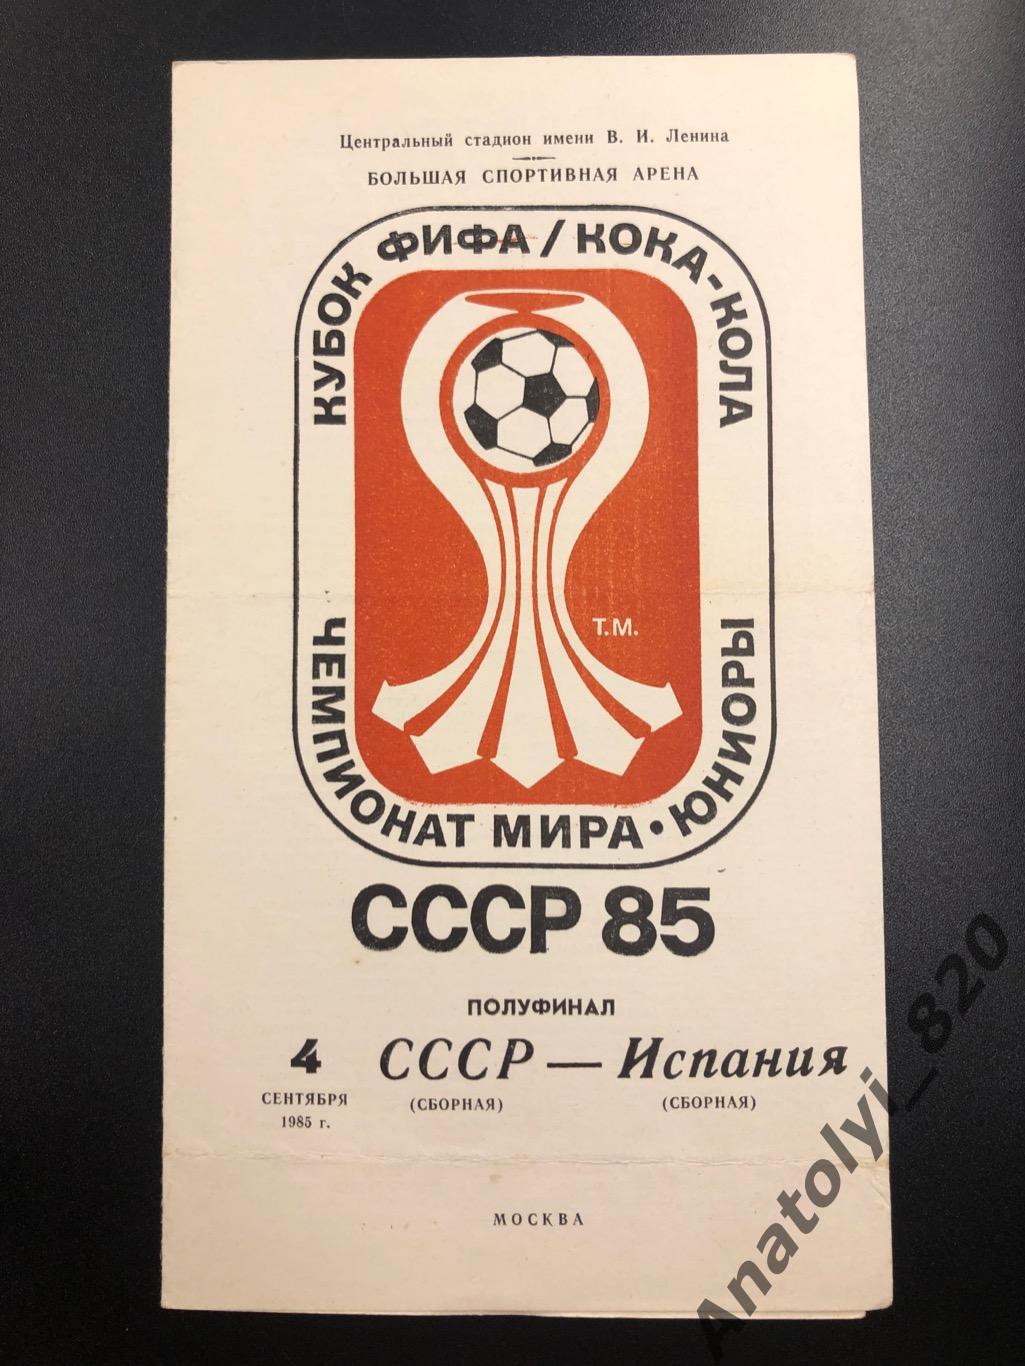 Сборная СССР - сборная Испании, 1985 год